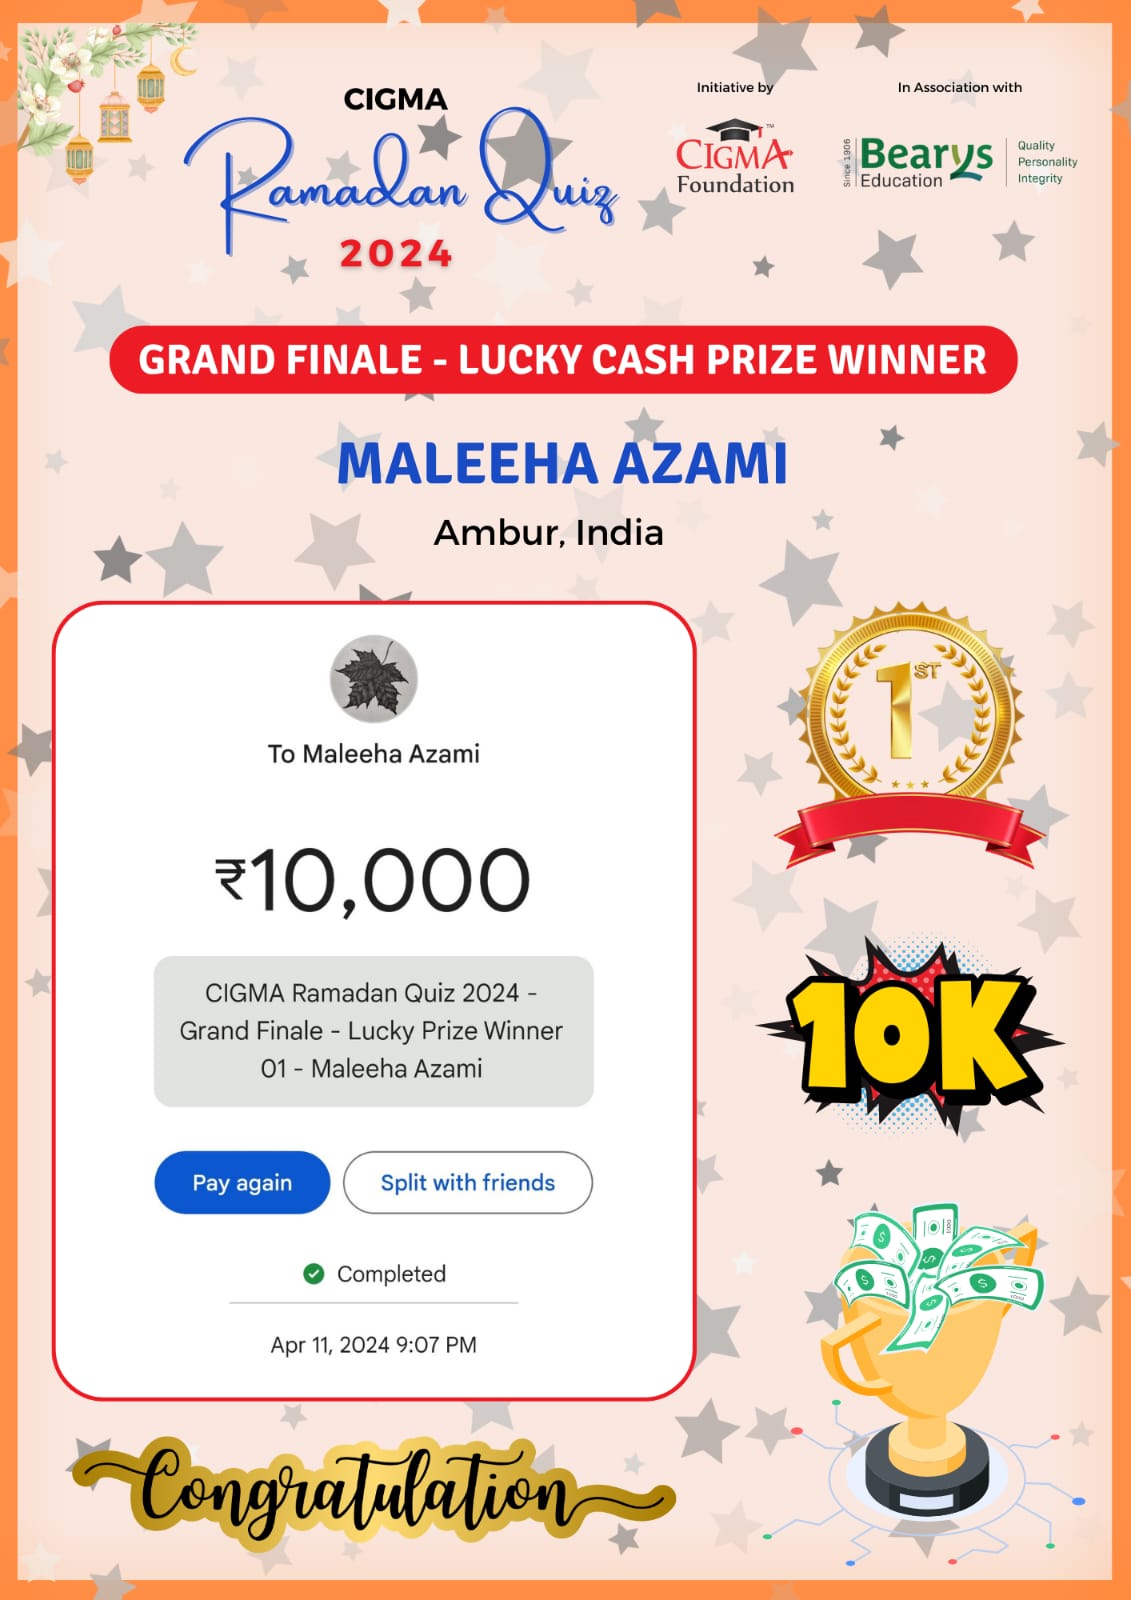 CIGMA Ramadan Quiz 2024 Grand Finale - Lucky Cash Prize Winner - Maleeha Azam - Ramadan 2024 - Eid Mubarak - Champion of CIGMA Ramadan Quiz 2024